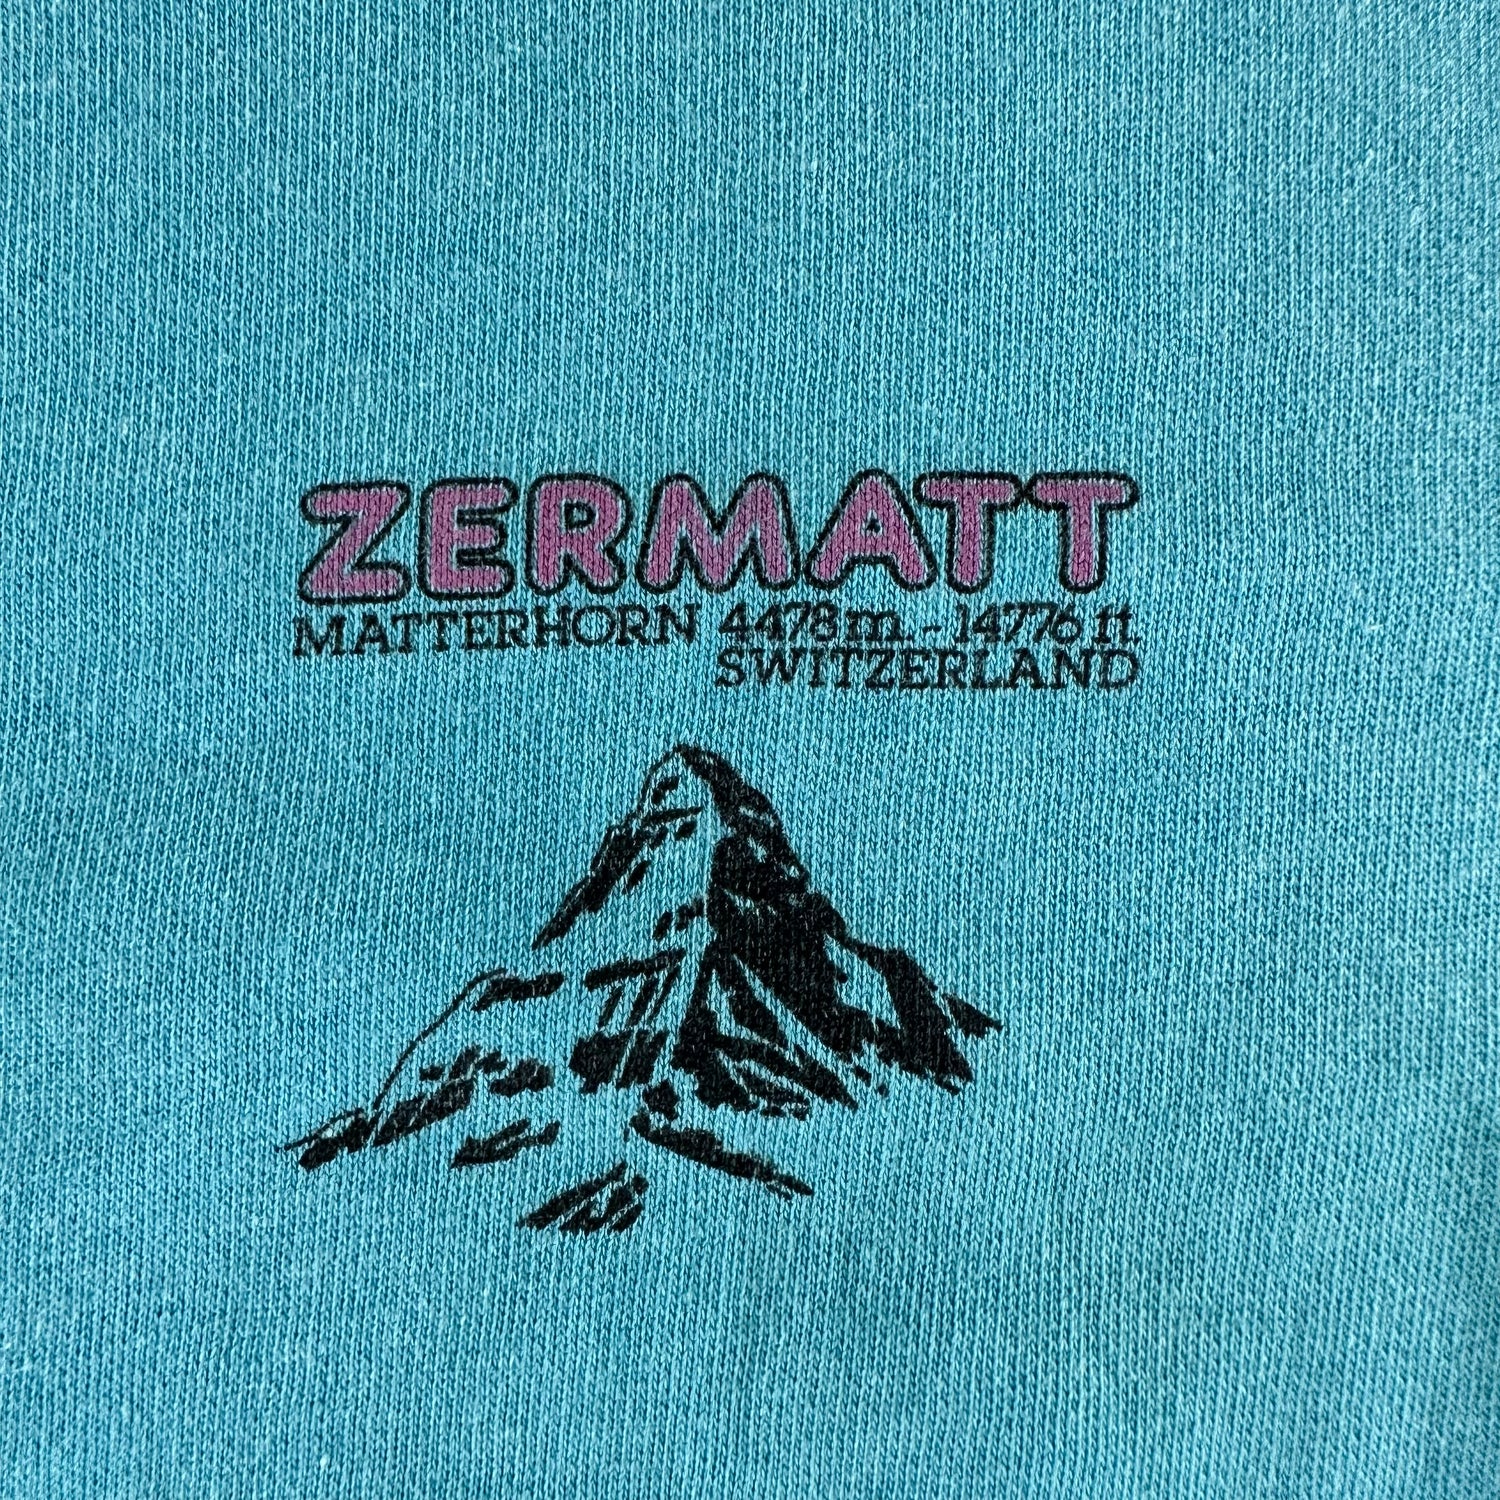 Vintage 1980s Switzerland Sweatshirt size Medium